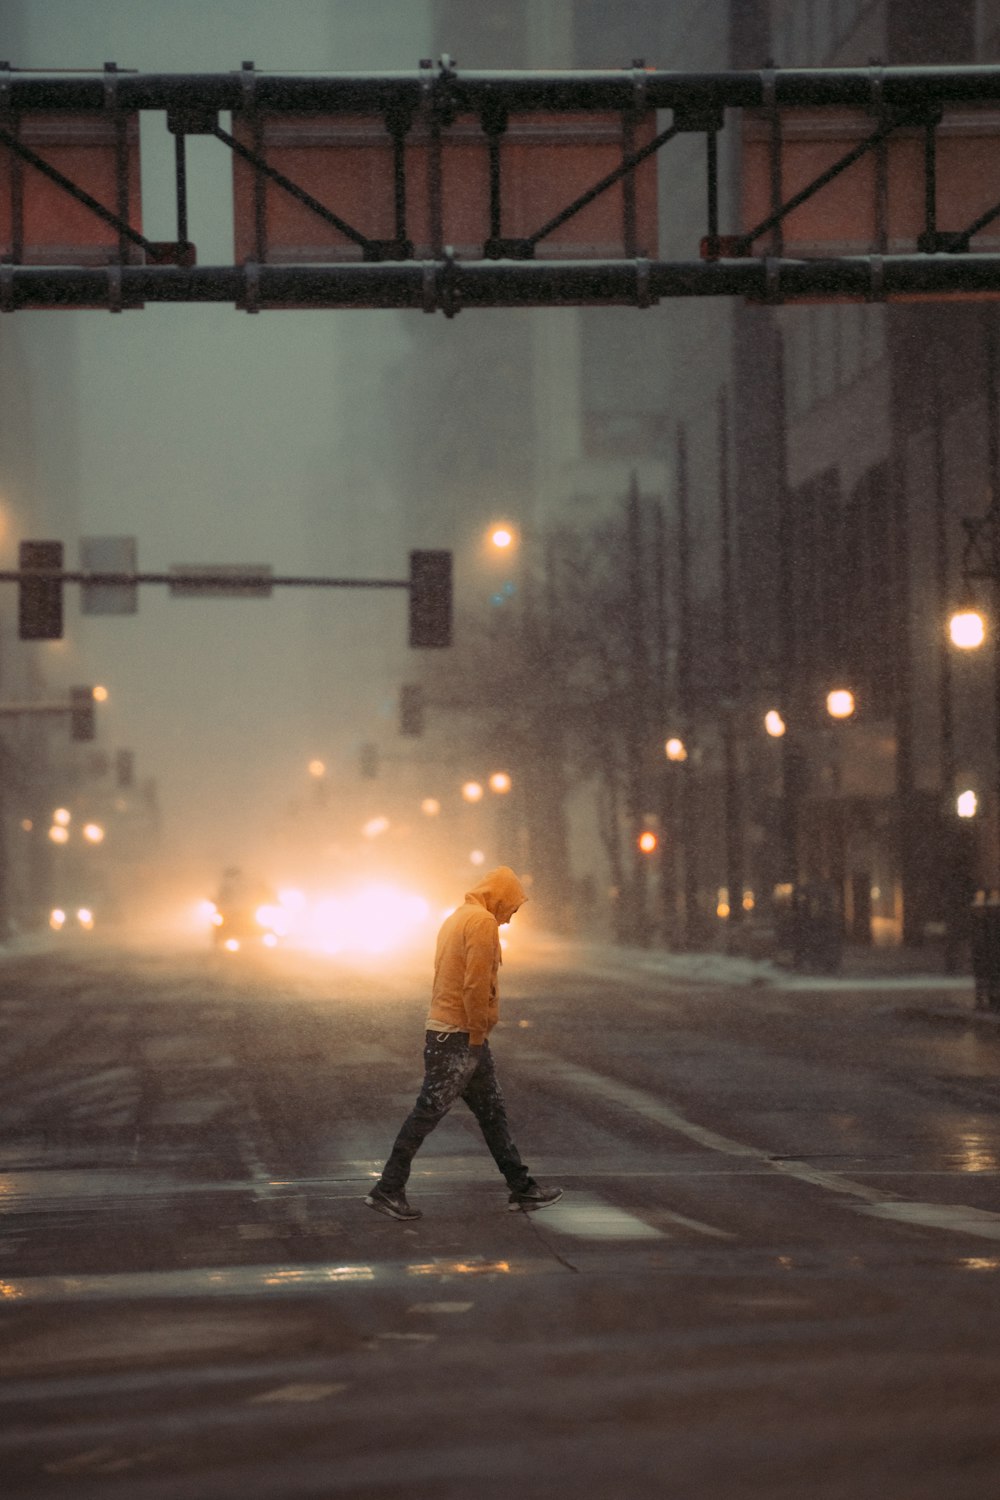 a man walking across a street in the rain